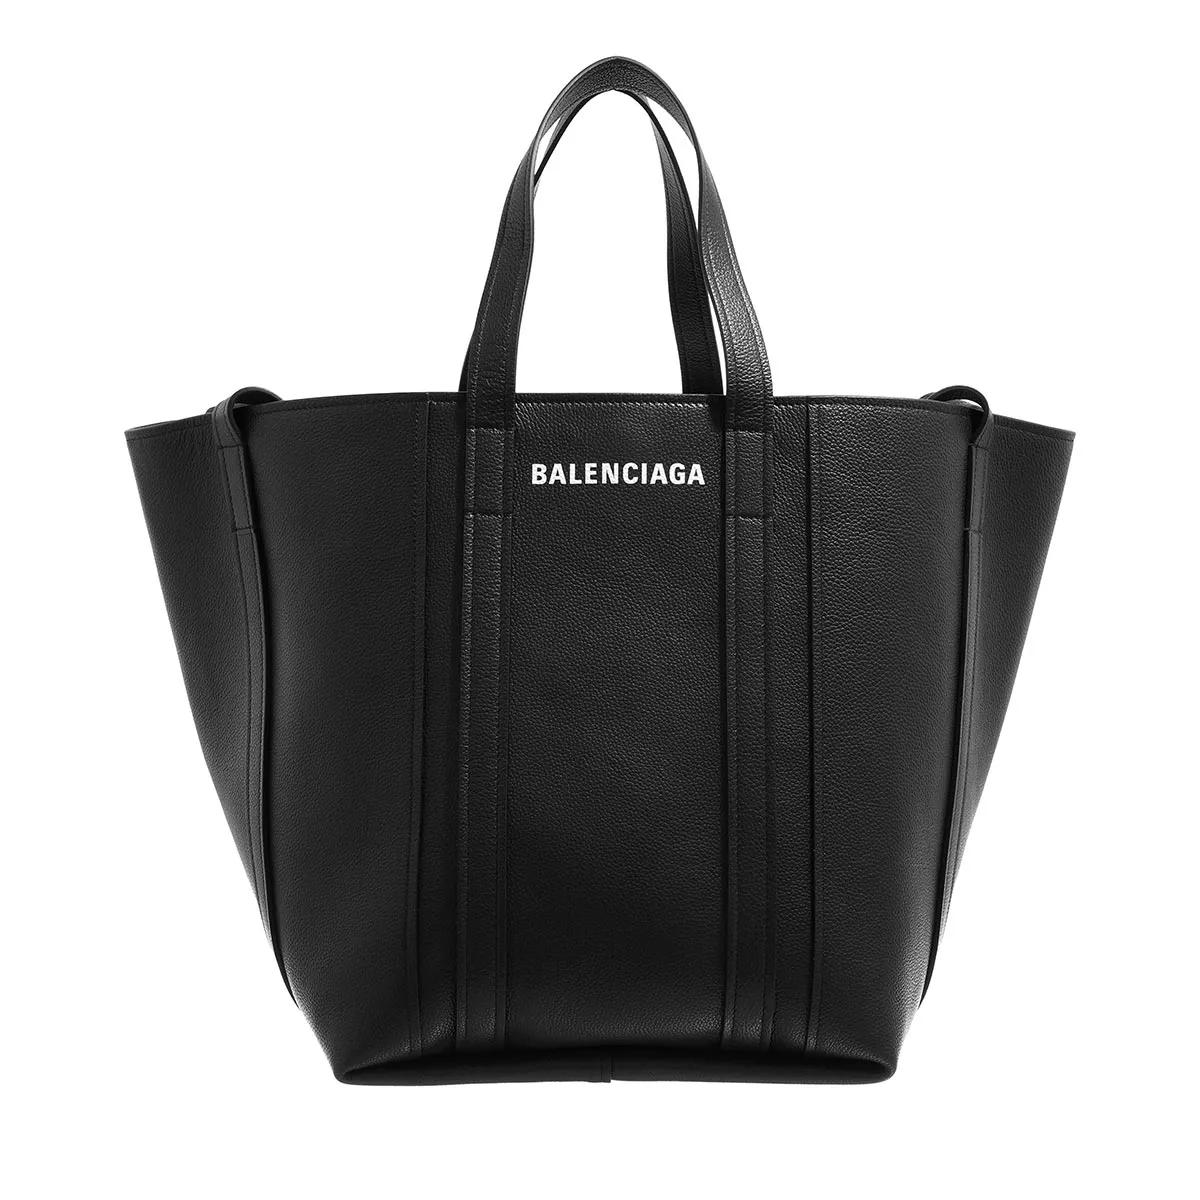 Balenciaga Totes - Everyday Tote Bag Leather in zwart in de sale-Balenciaga 1